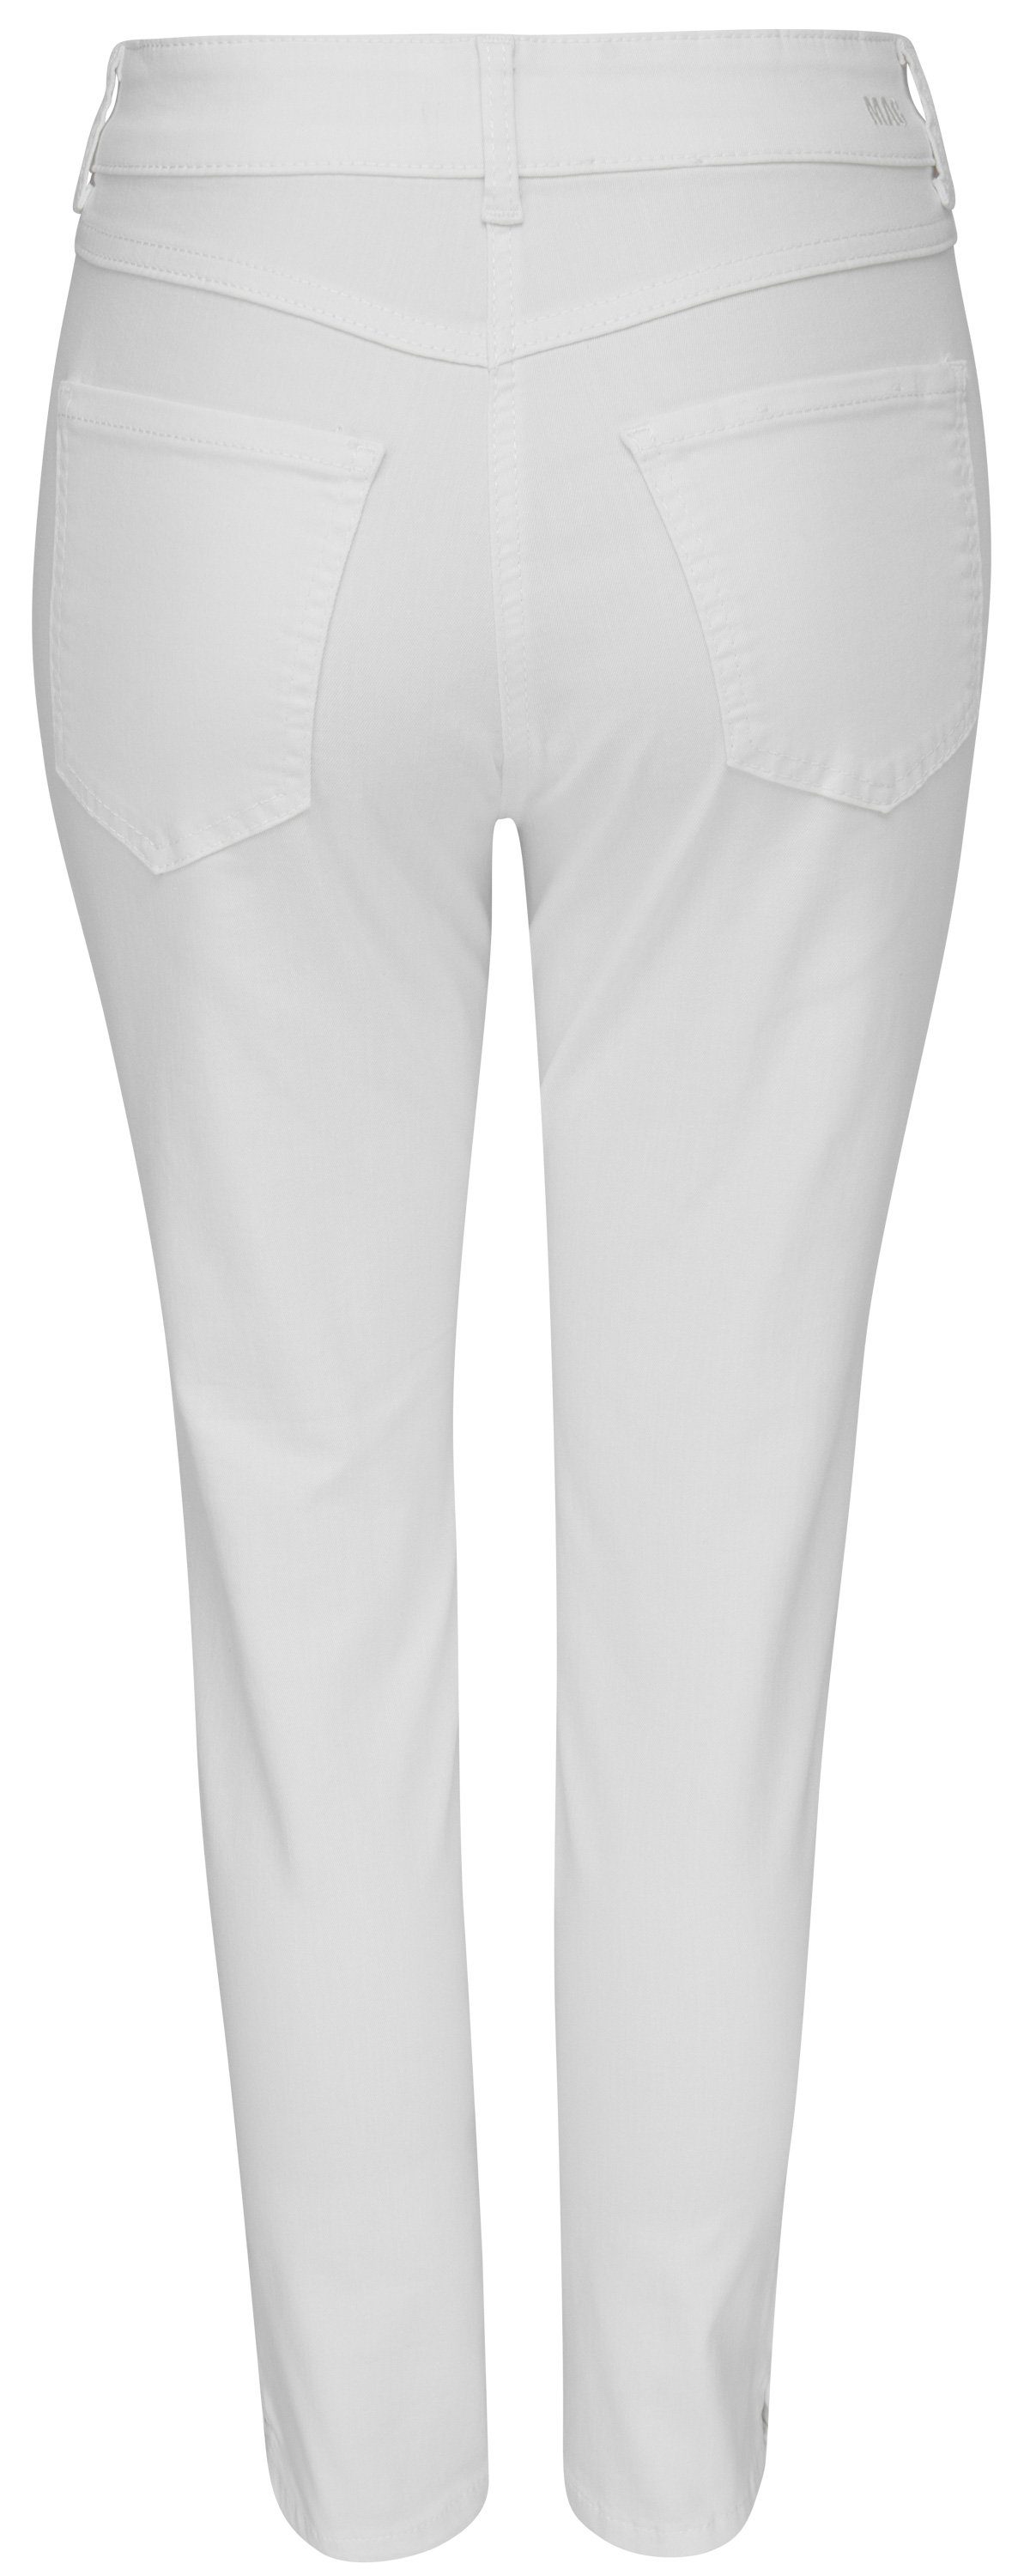 5260-90-0394 white Stretch-Jeans ANGELA D010 7/8 nature MAC MAC denim SUMMER